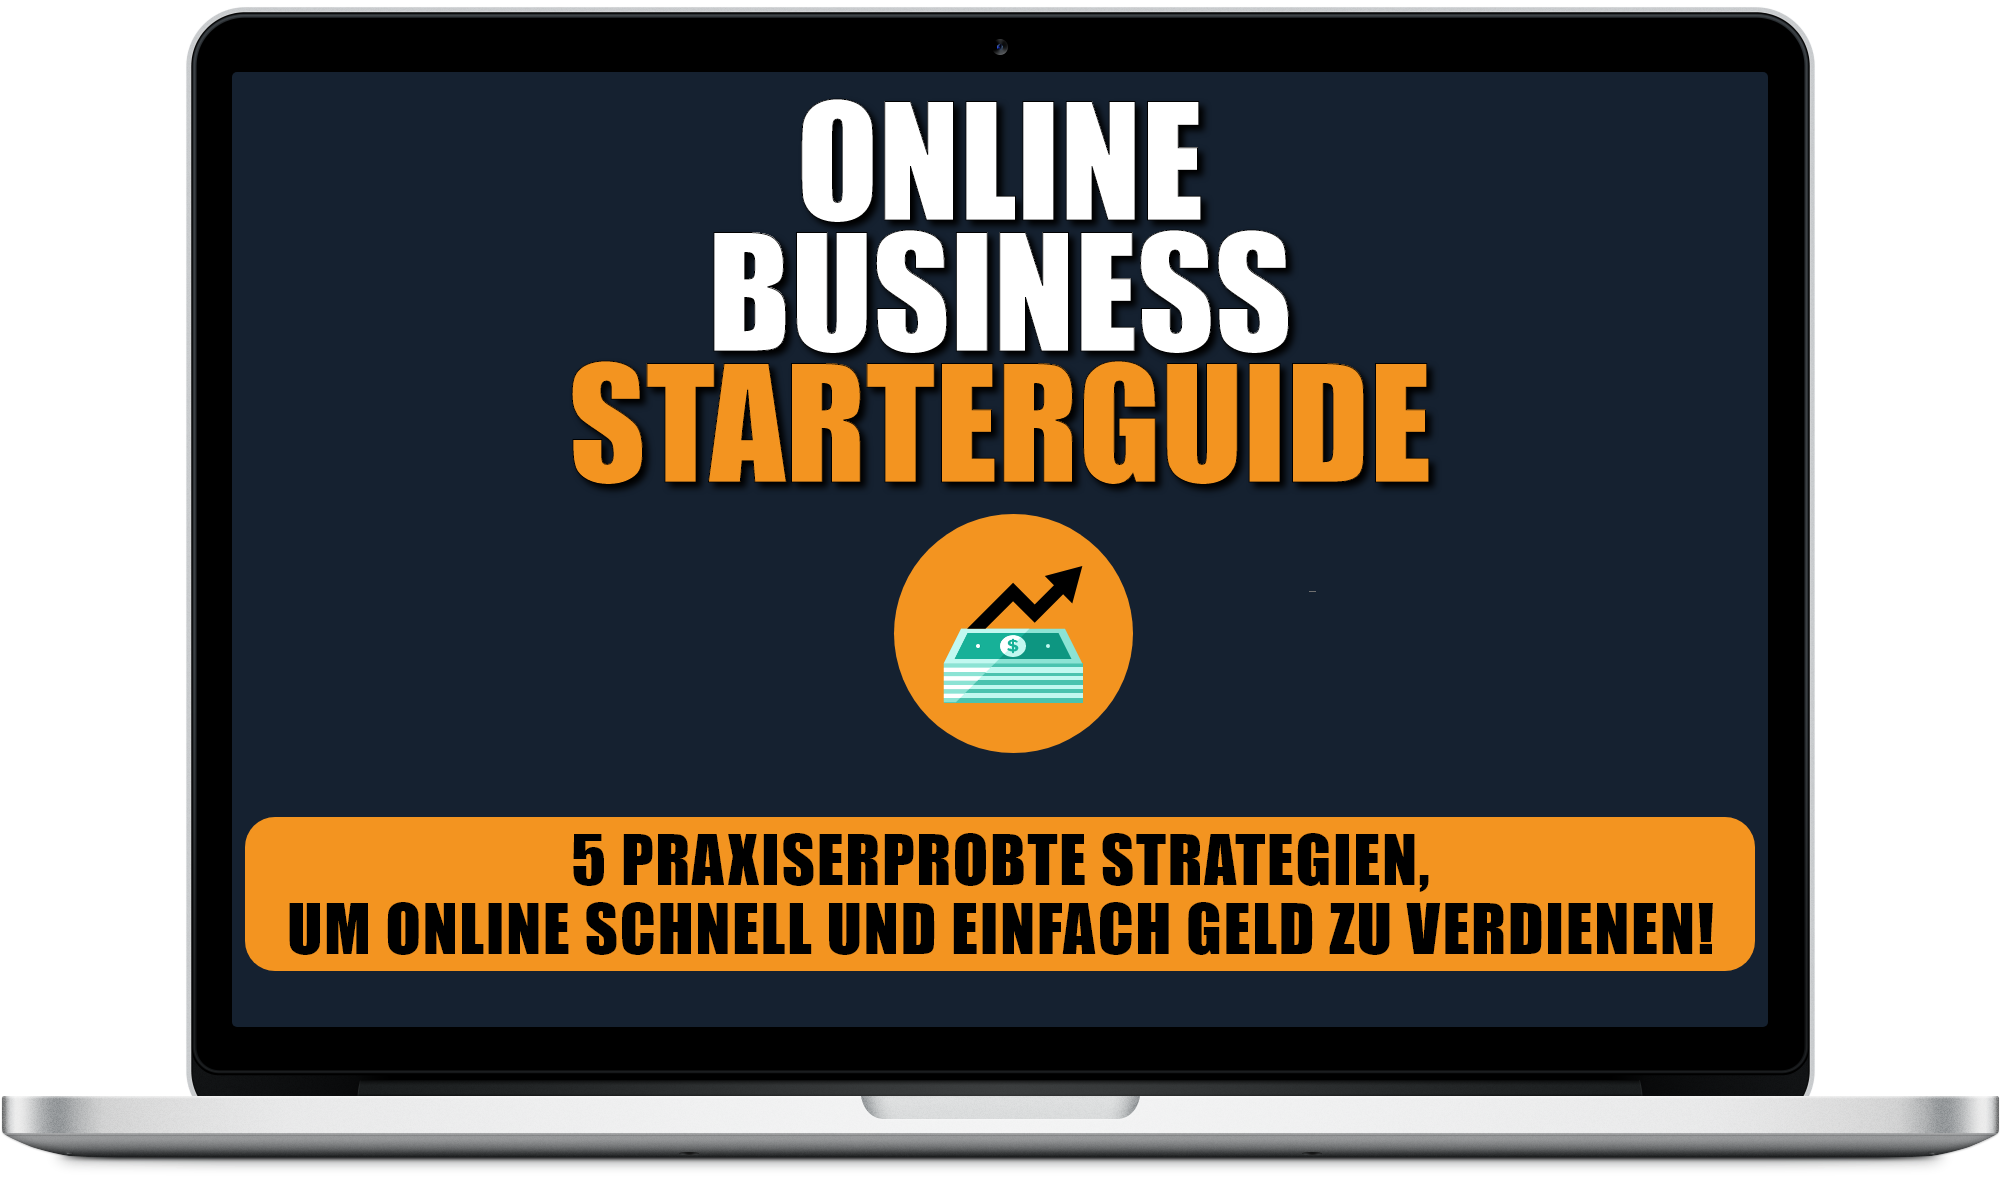 Online Business Starterguide von Fabian Habich